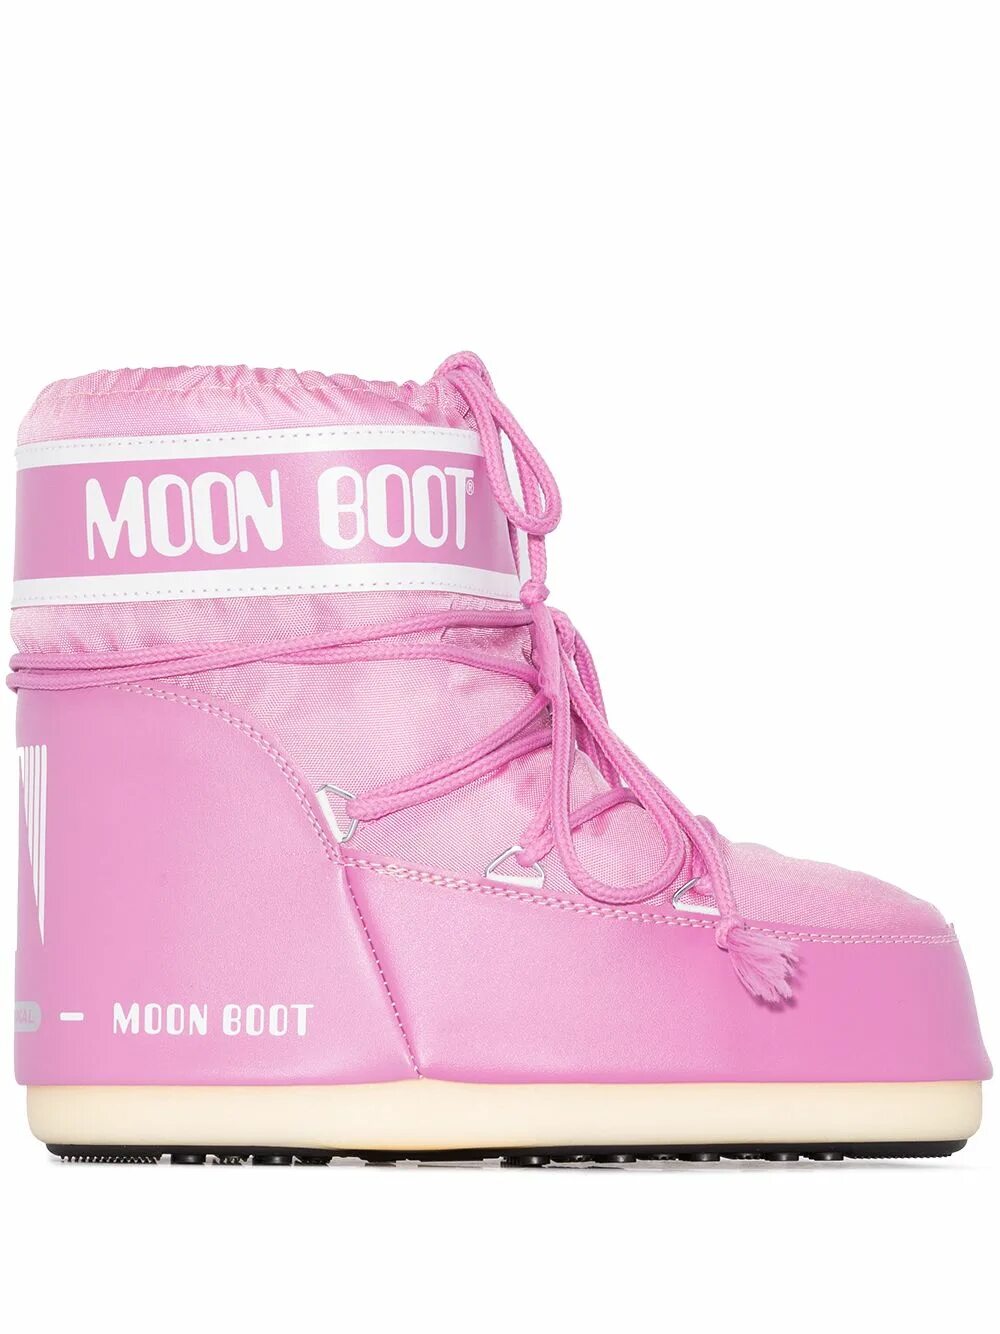 Обувь Moon Boot. Ботинки Moon Boot Low. Луноходы Moon Boot. Moon Boot женские розовые. Муны обувь